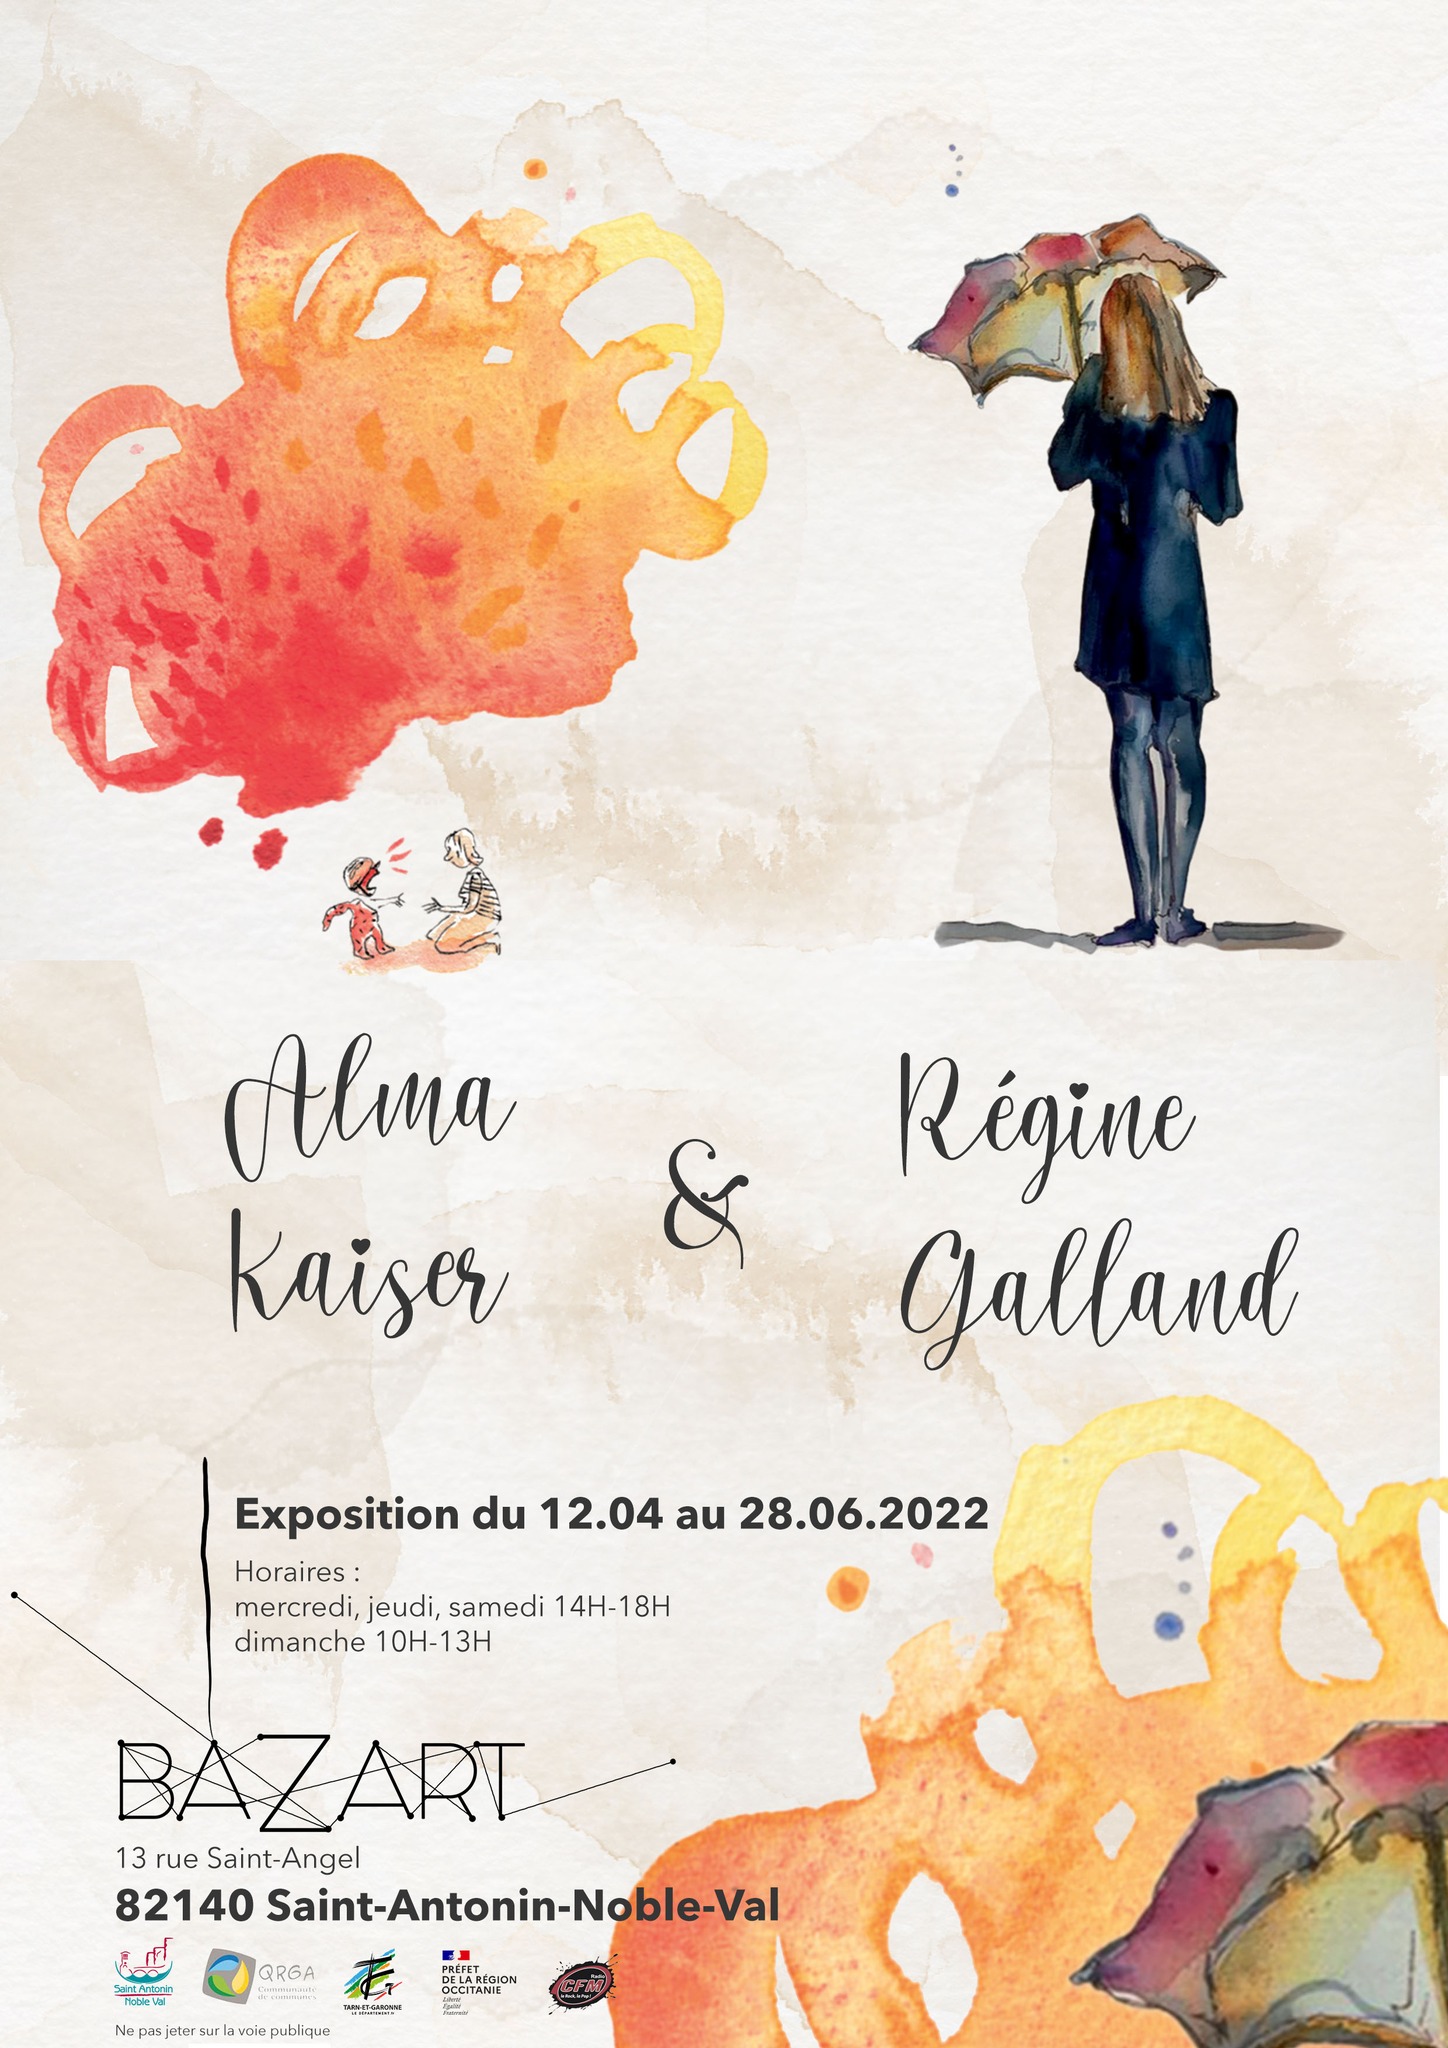 Alma Kaiser // Régine Galland 19.04 au 21.07